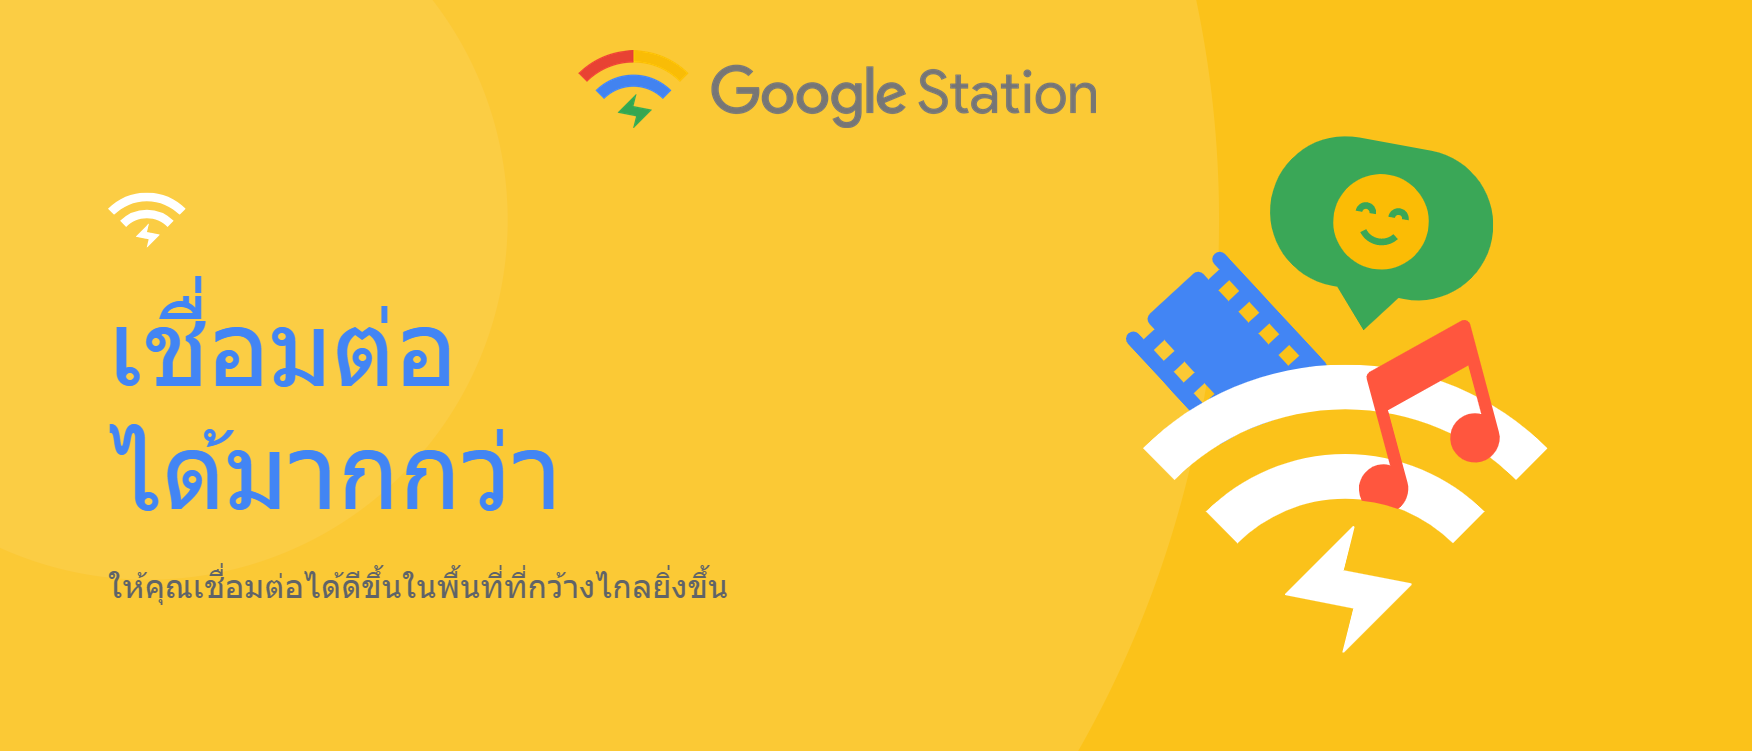 Capture 1 | free wifi | Google ประกาศเพิ่มจุด Wi-Fi ความเร็วสูงใช้ฟรีใน 6 สนามบินเพื่อคนไทย พบ Google Station ได้แล้วตั้งแต่วันนี้